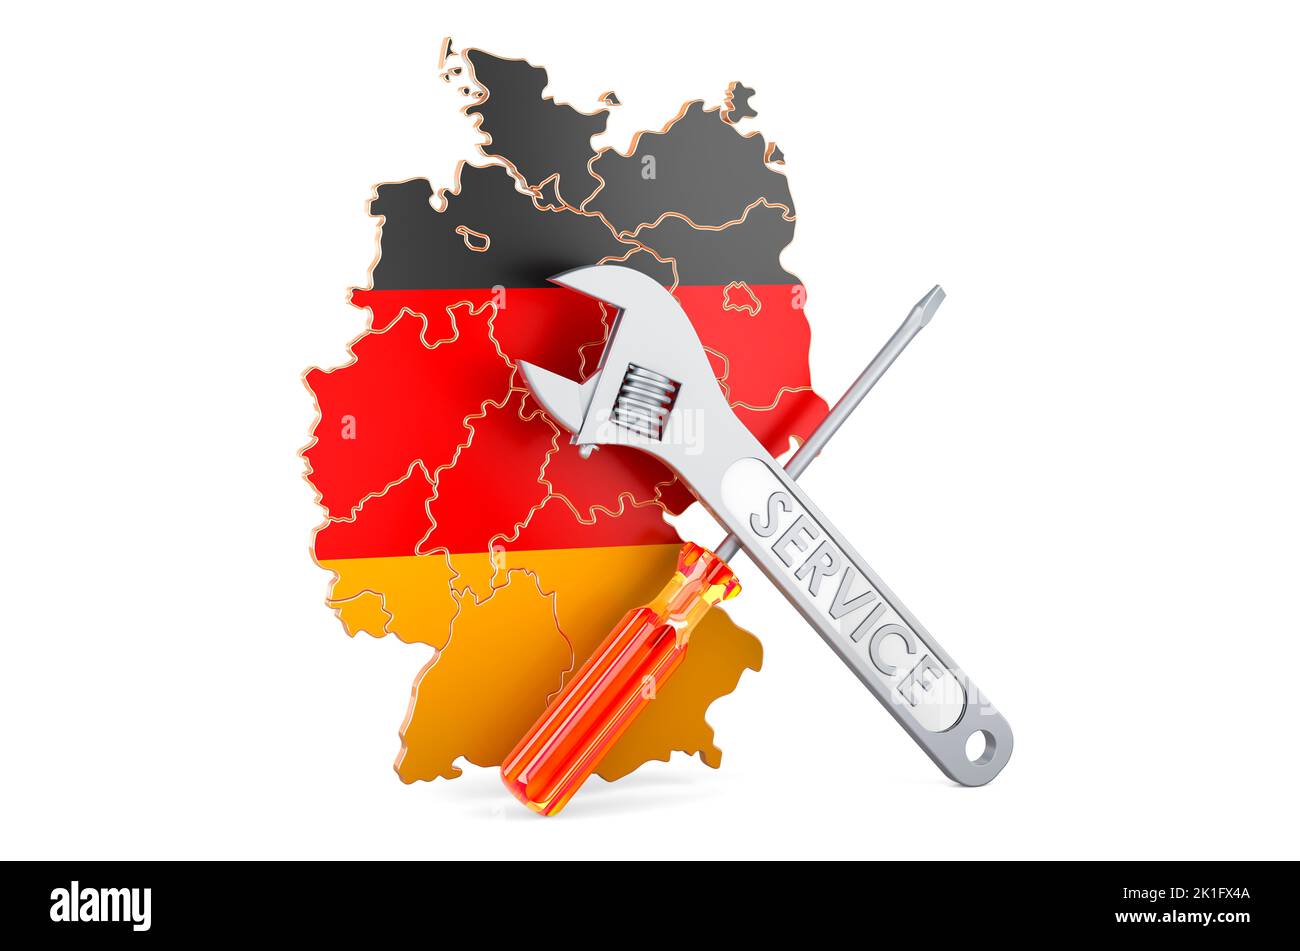 Mapa alemán con destornillador y llave, 3D renderizado aislado sobre fondo blanco Foto de stock